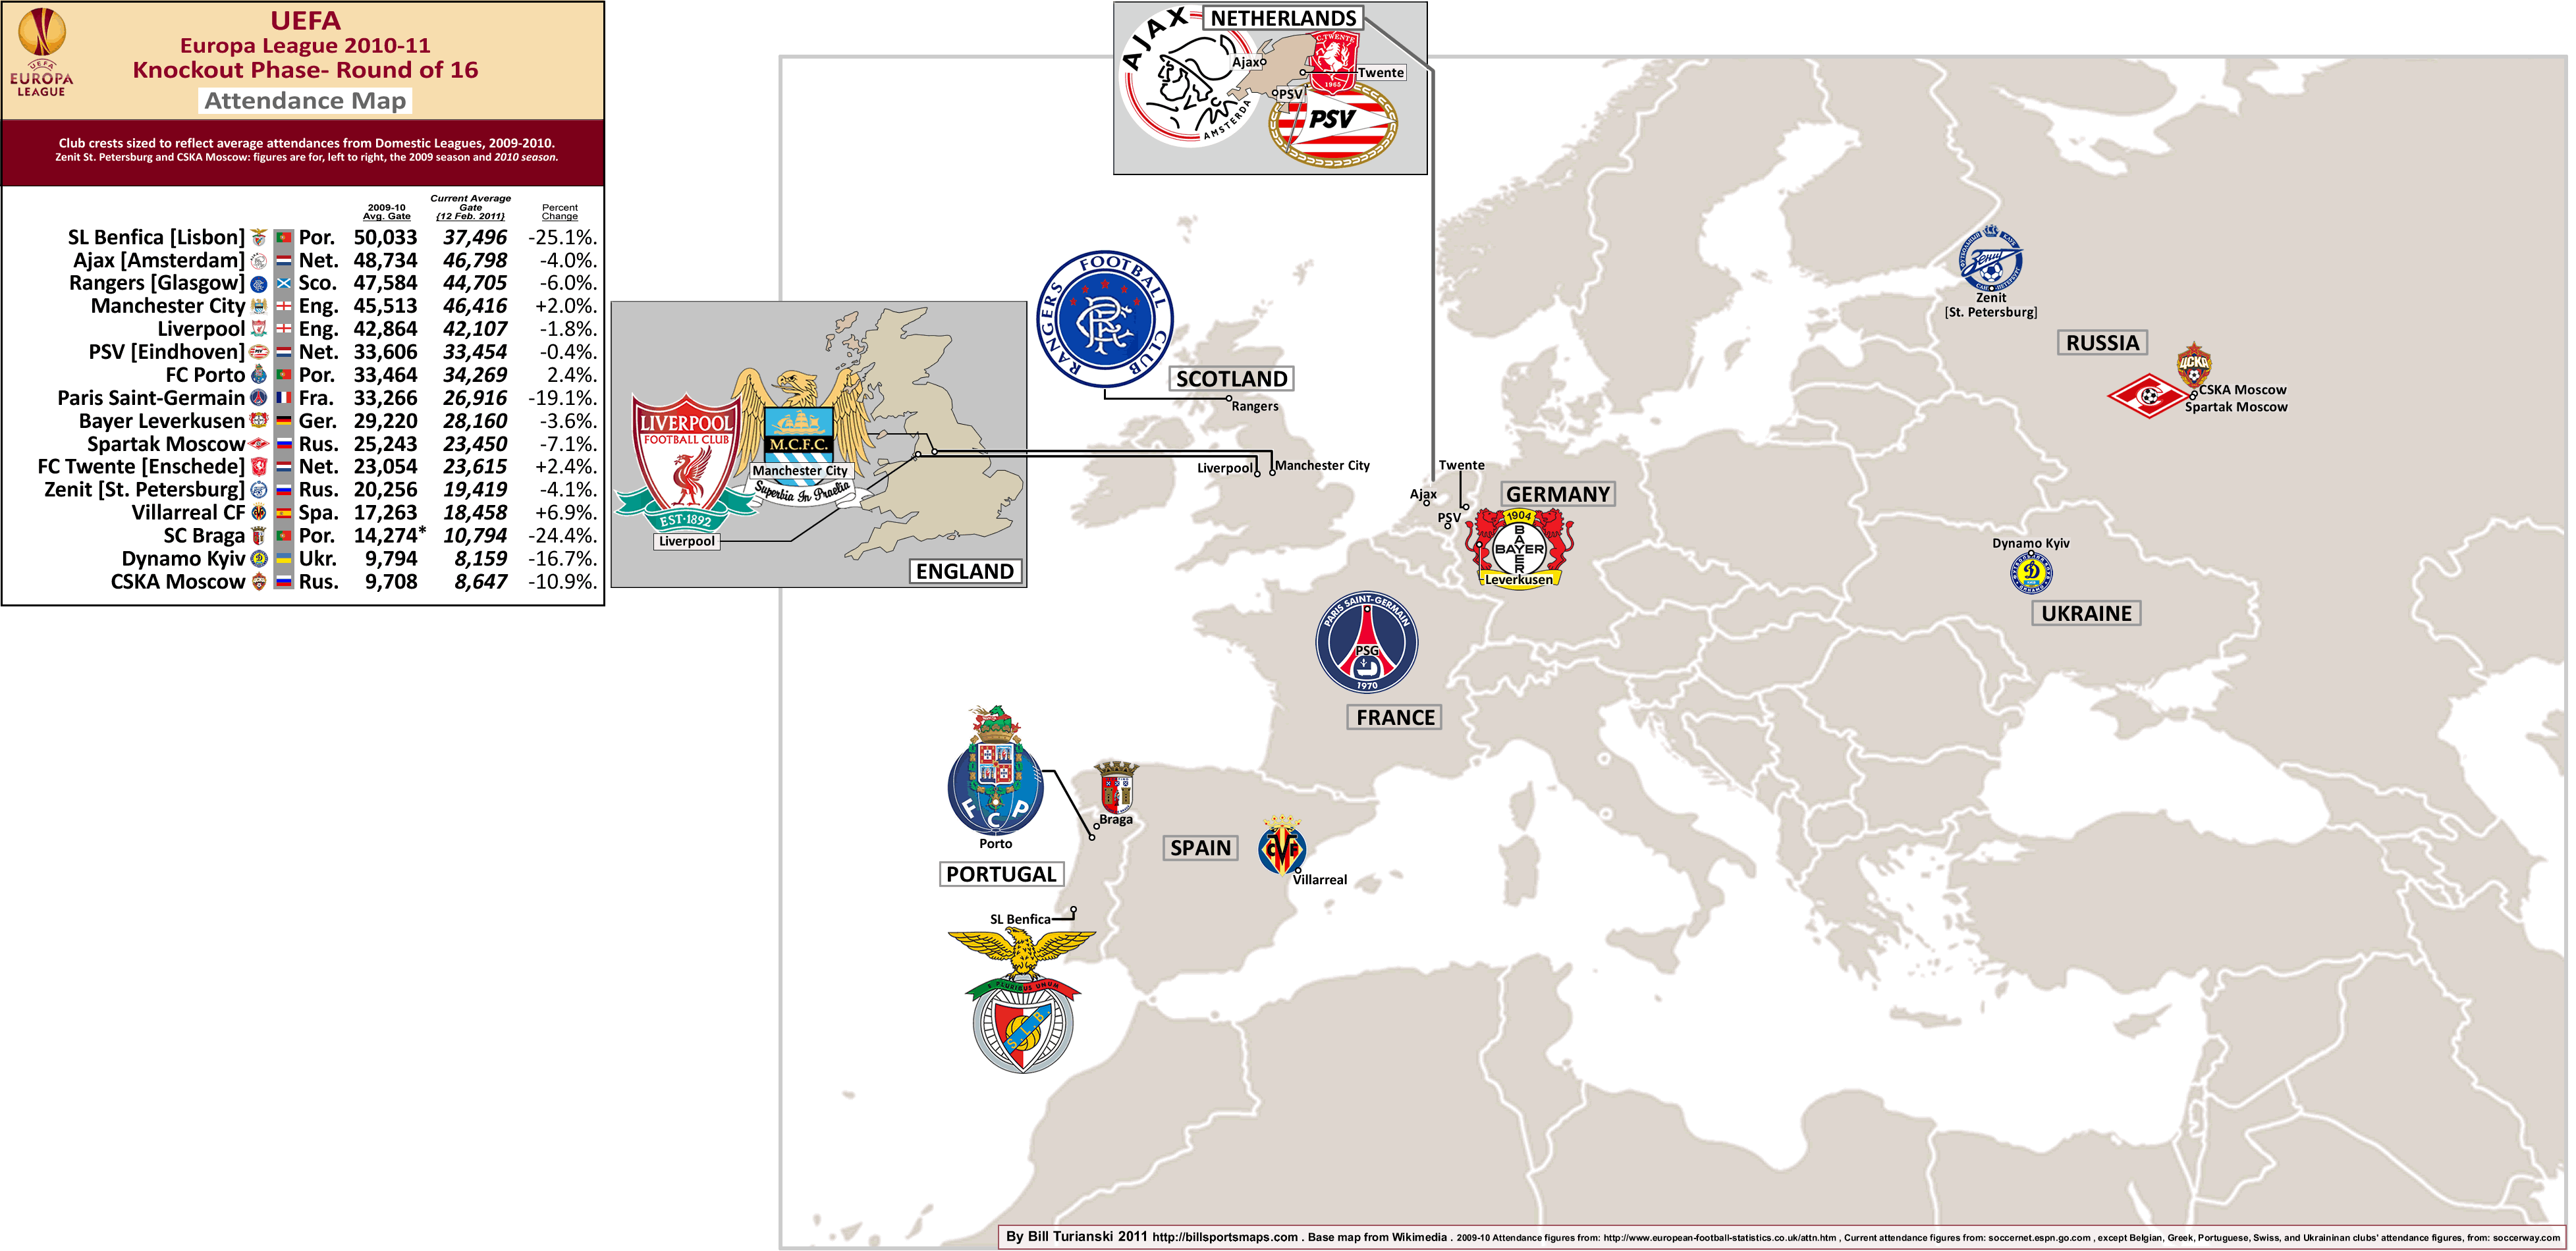 coaxingqomd - uefa europa league 2009 10 wiki